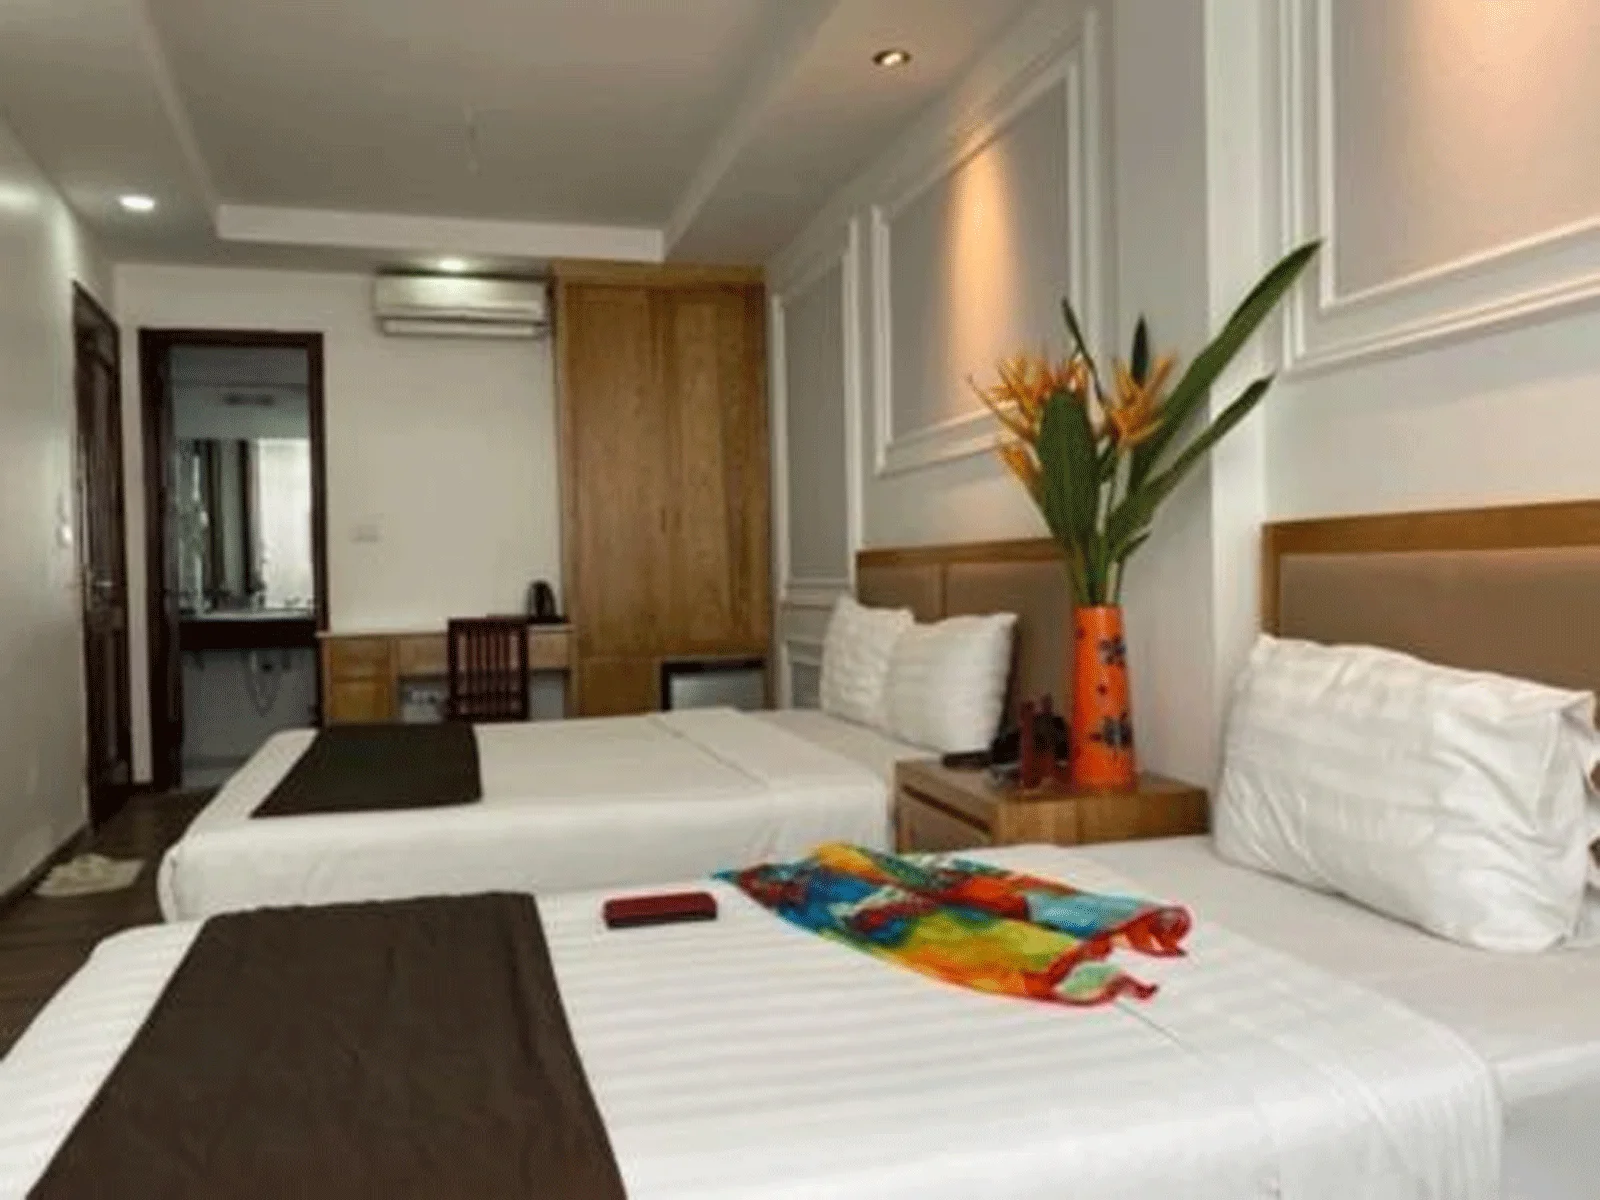 Khách sạn Holiday Suites Hotel & Spa Hà Nội